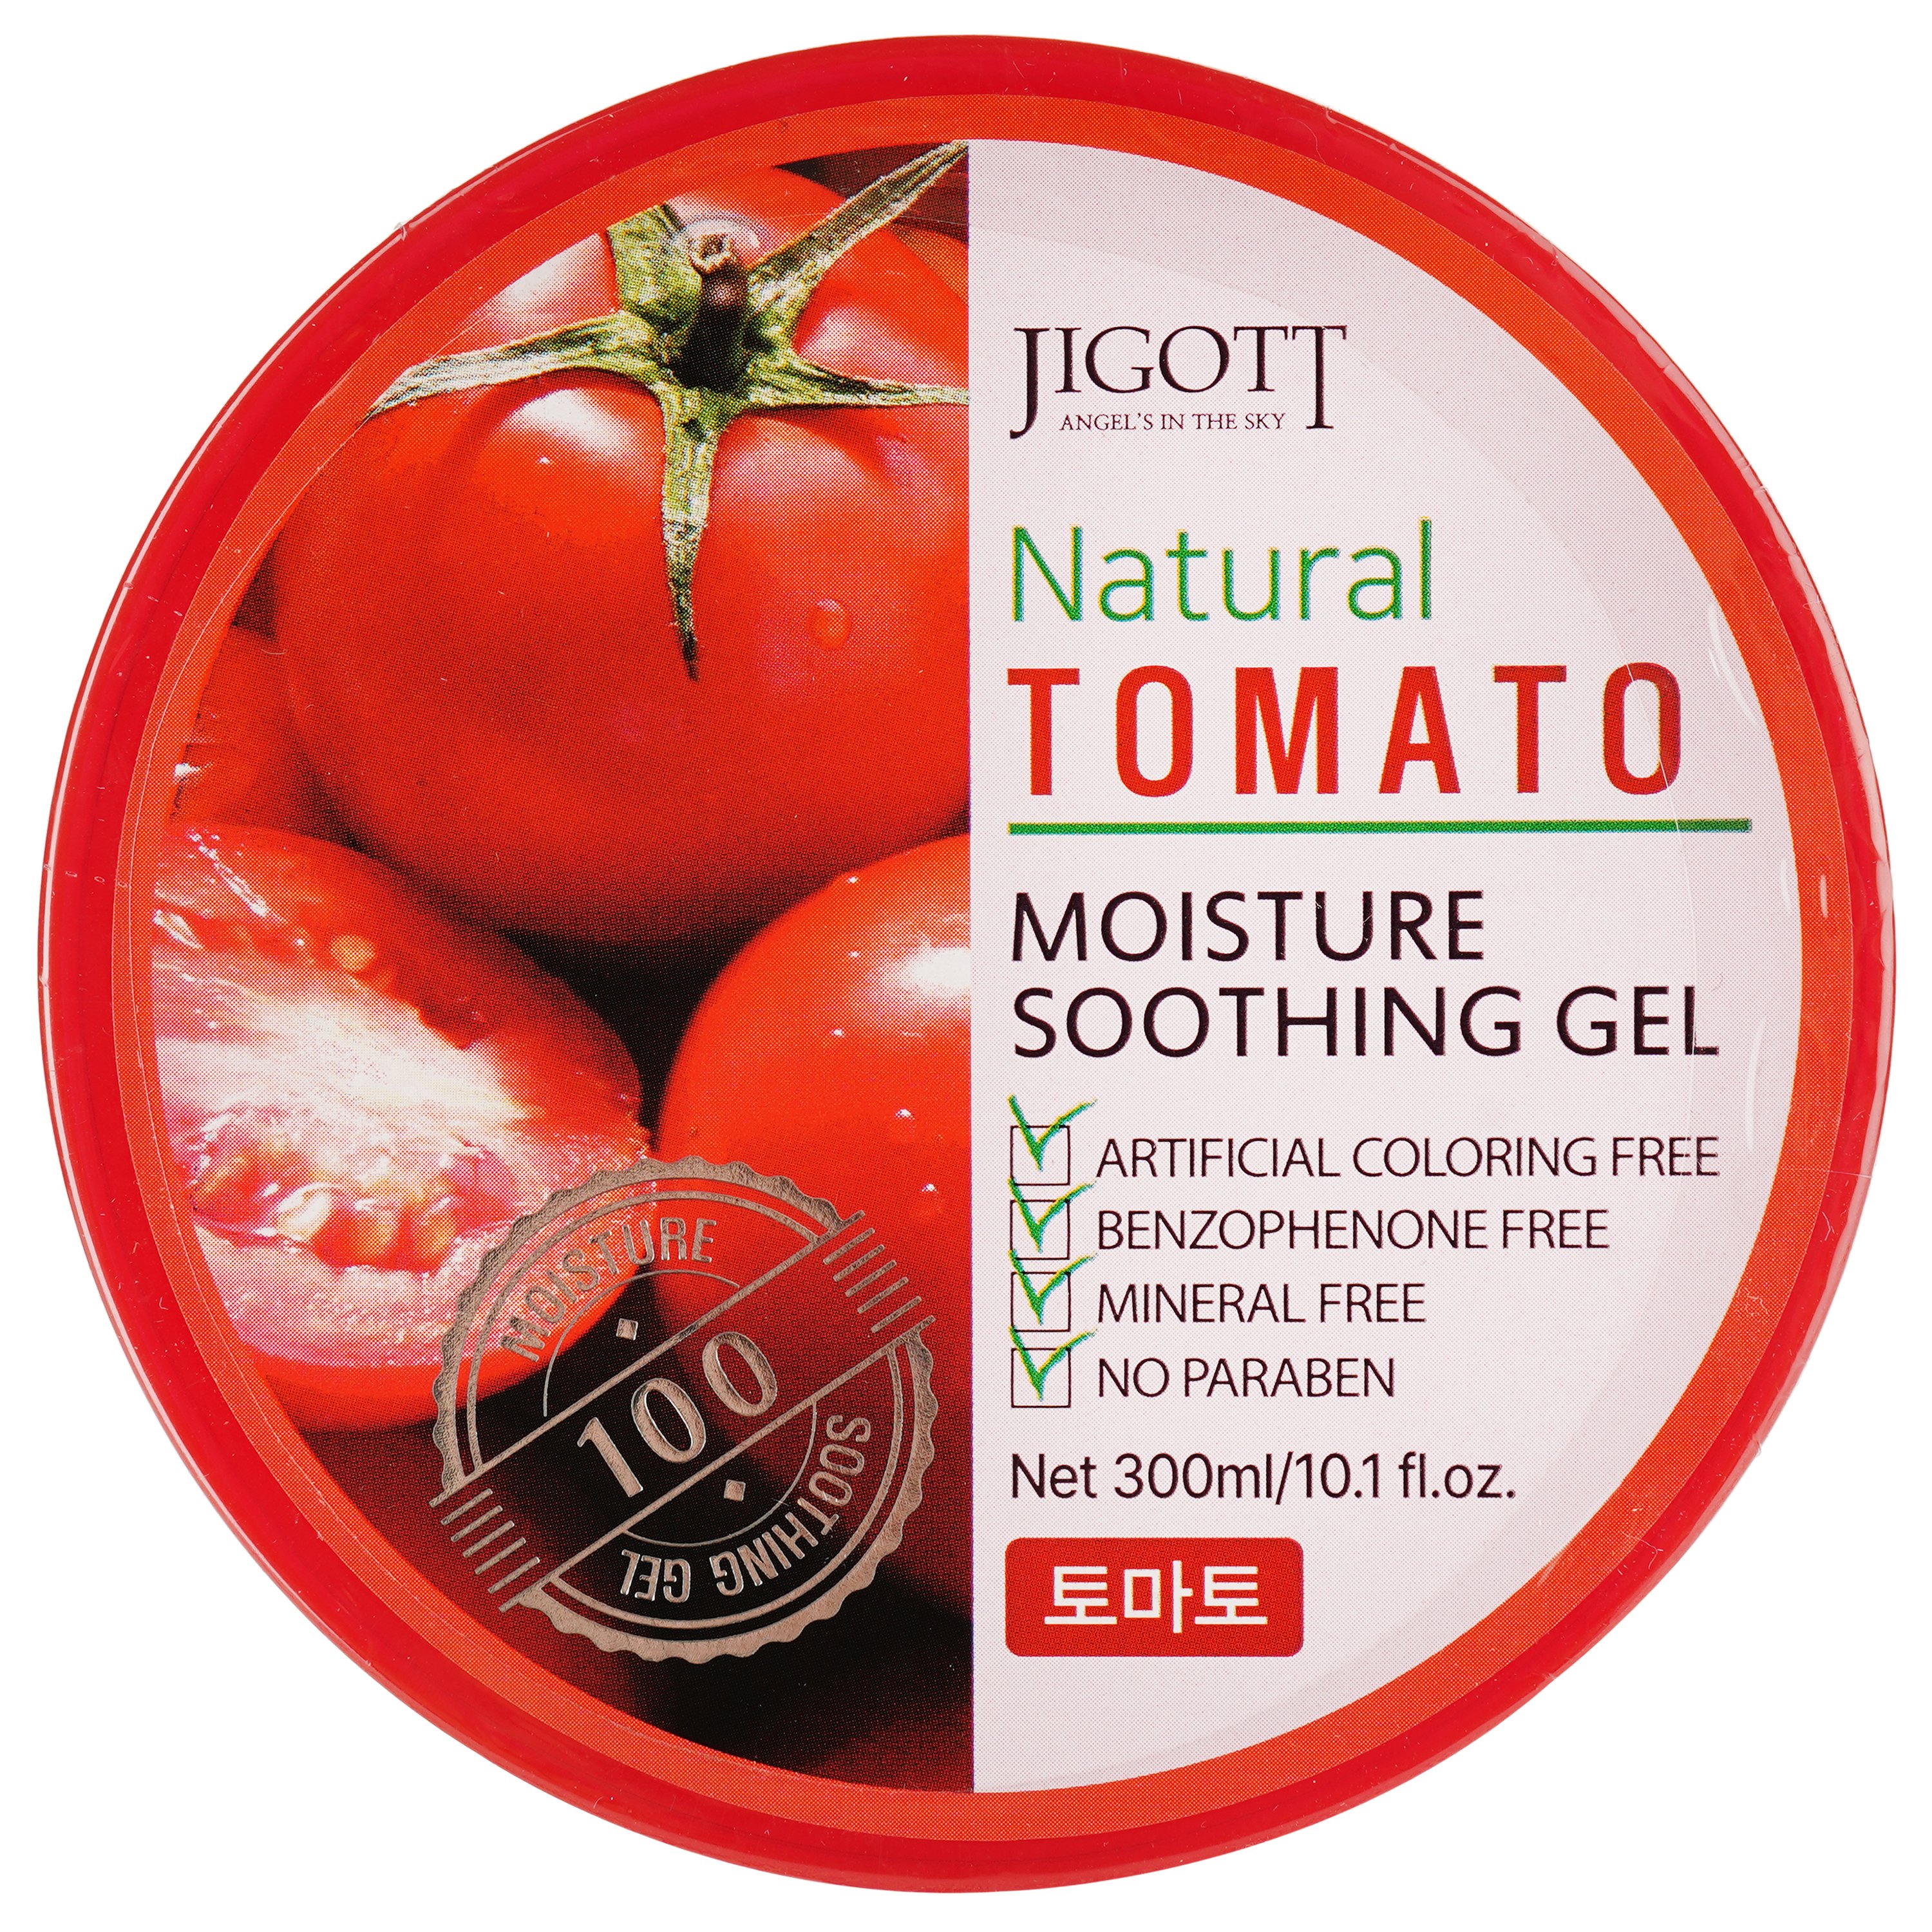 Увлажняющий гель для лица Jigott Natural Tomato Moisture Soothing Gel с экстрактом томата, 300 мл - фото 1